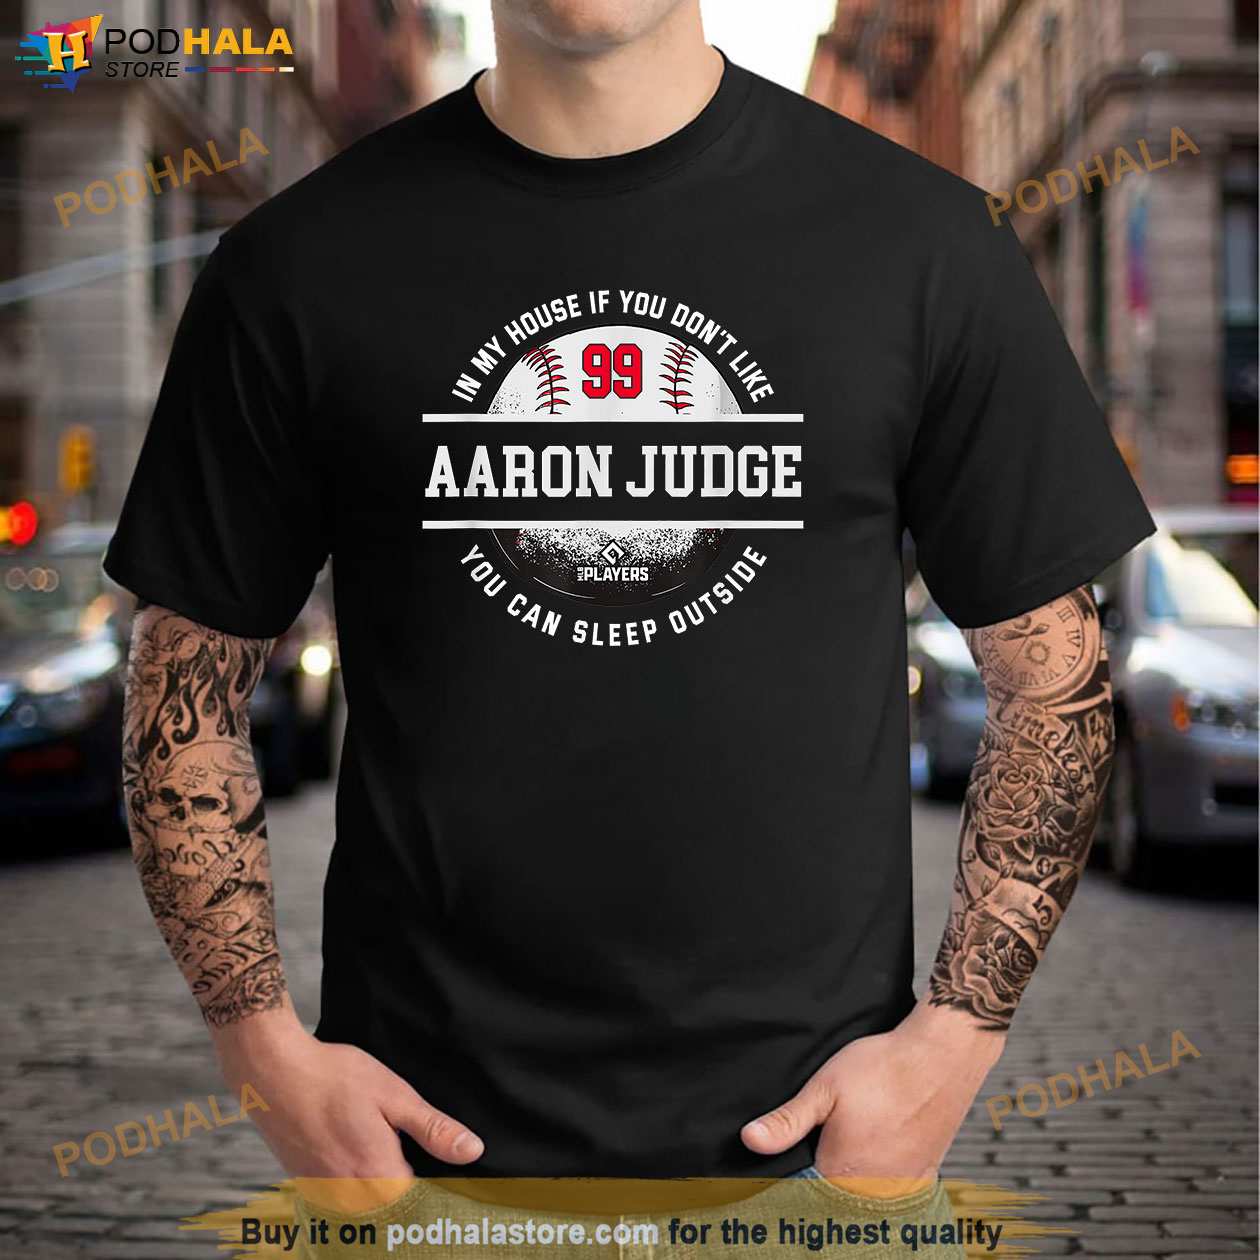 aaron judge 99